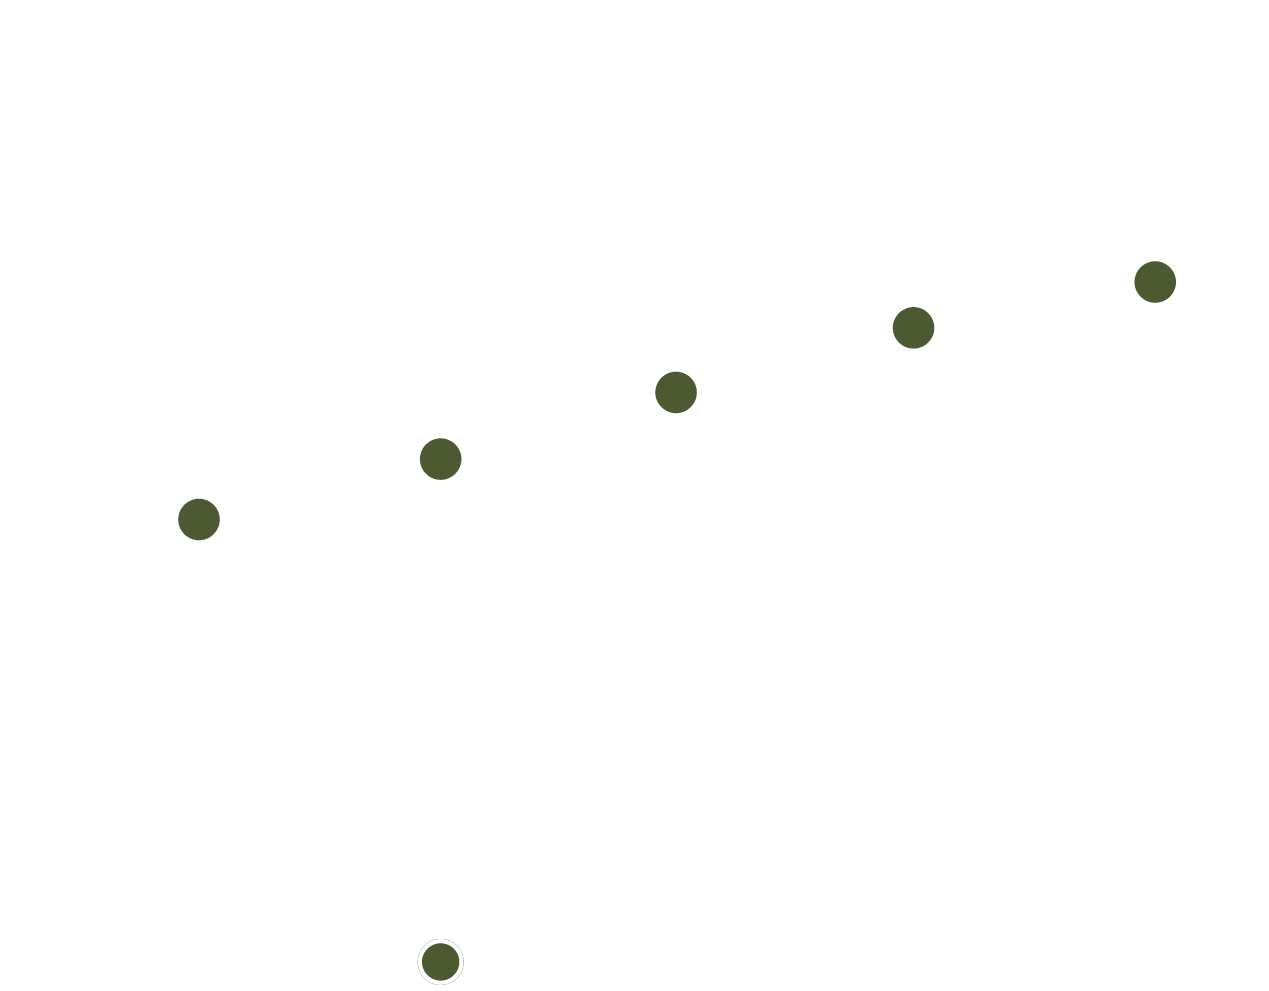 Ce graphique montre la rentabilité des entreprises réparties en quintiles selon leur notation dans le domaine de l'ESG. L'ordonnée indique la rentabilité brute, mesurée par le score z, qui varie de -0,2 à 0,2. Les quintiles figurent en abscisse (les valeurs discrètes Q1 à Q5). Les barres verticales au-dessus de Q1- Q5 représentent une fourchette de 5 % à 95 % des valeurs observées. Chaque barre comporte un point vert représentant la moyenne et un point blanc représentant la valeur actuelle. <br /> <br />
 
Le bas de la barre Q1 est à -0,201 et le haut à -0,015, avec une moyenne et une valeur actuelle de respectivement-0,088 et -0,166. Le bas de la barre Q2 est à -0,197 et le haut est 0,021, avec une moyenne et une valeur actuelle de -0,066 et -0,153. Le bas de la barre Q3 est à -0,131 et le haut à 0,119, avec une moyenne et une valeur actuelle de -0,019 et -0.085. Le bas de la barre Q4 est à -0,134 et le haut à 0,112, avec une moyenne et une valeur actuelle de 0,022 et -0,124. Le bas de la barre Q5 est à -0,063 et le haut à 0,166, avec une moyenne et une valeur actuelle de 0,044 et -0,124.
